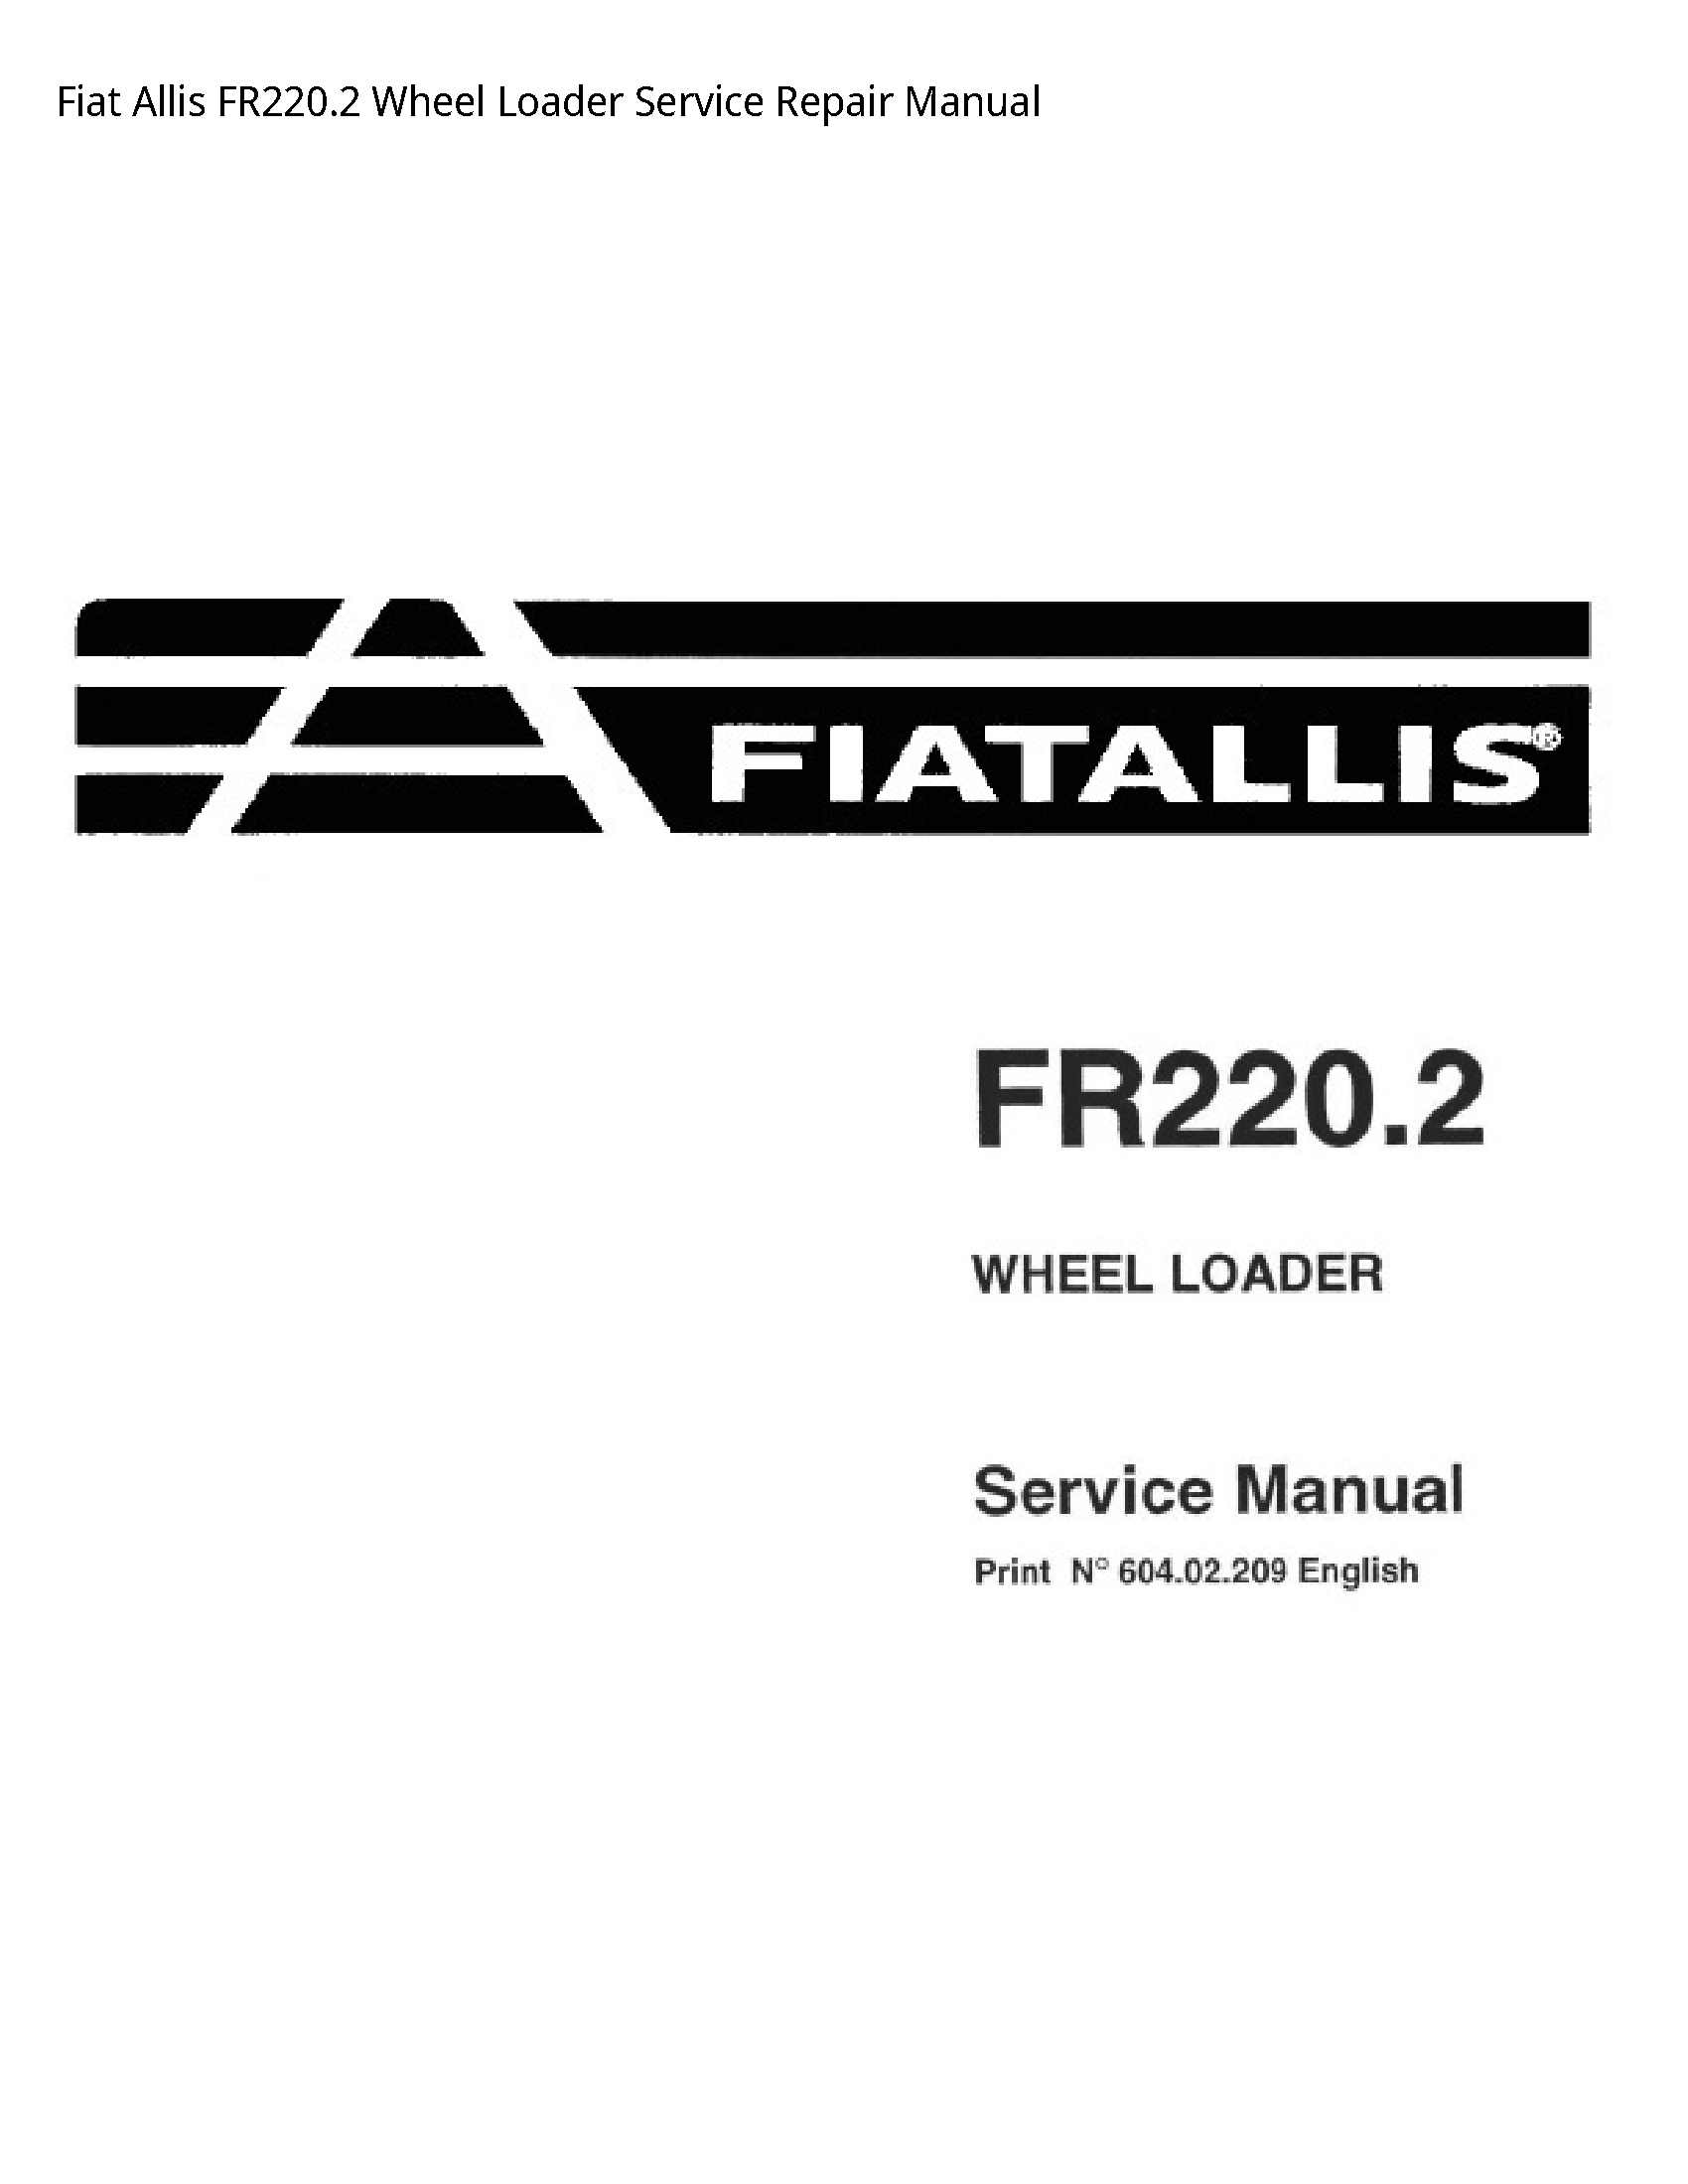 Fiat Allis FR220.2 Wheel Loader manual